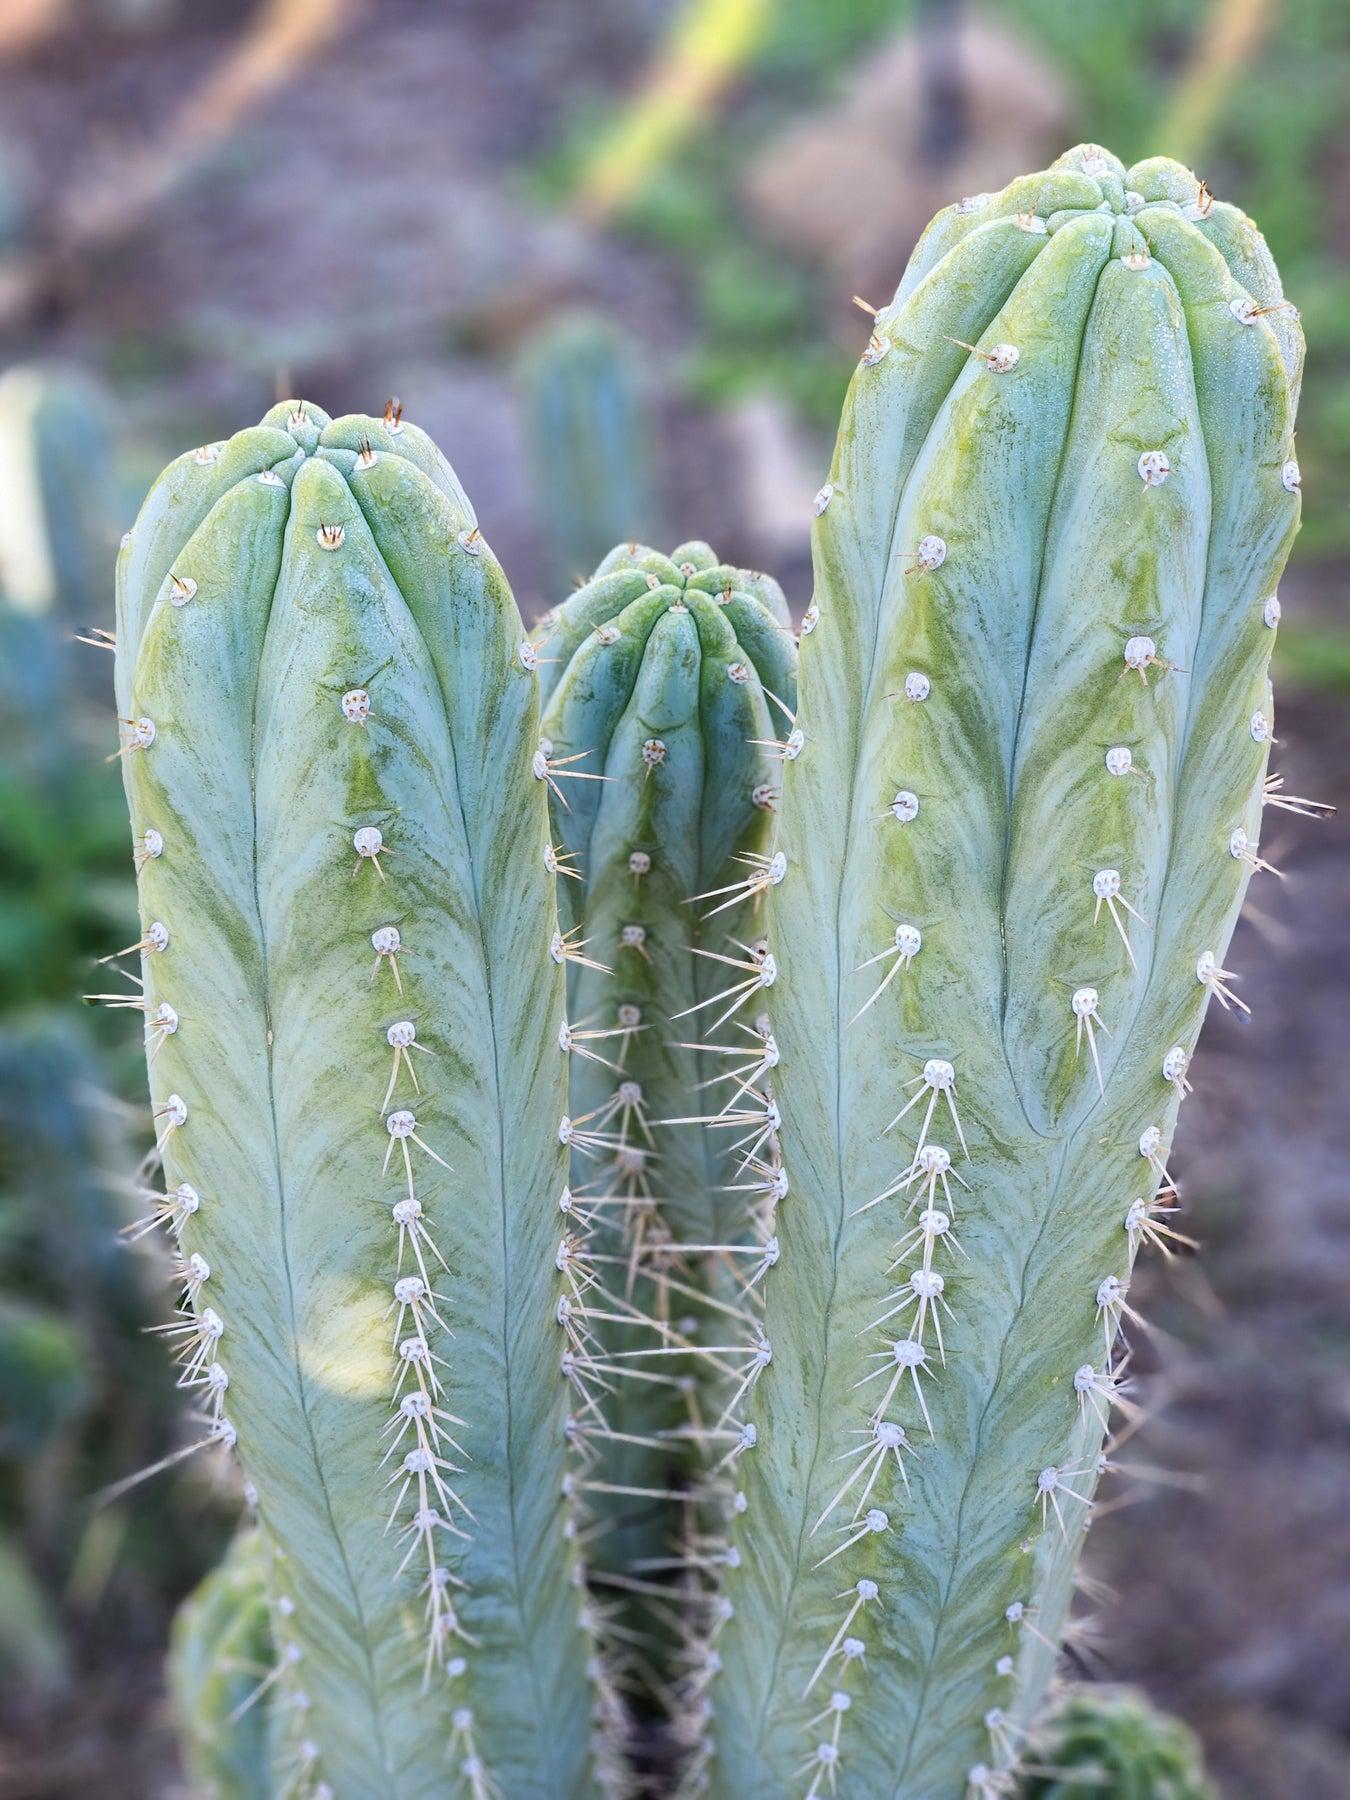 #EC45 EXACT Trichocereus Peruvianus "Storage Yard" Cactus CUTTING 7-8""-Cactus - Large - Exact-The Succulent Source